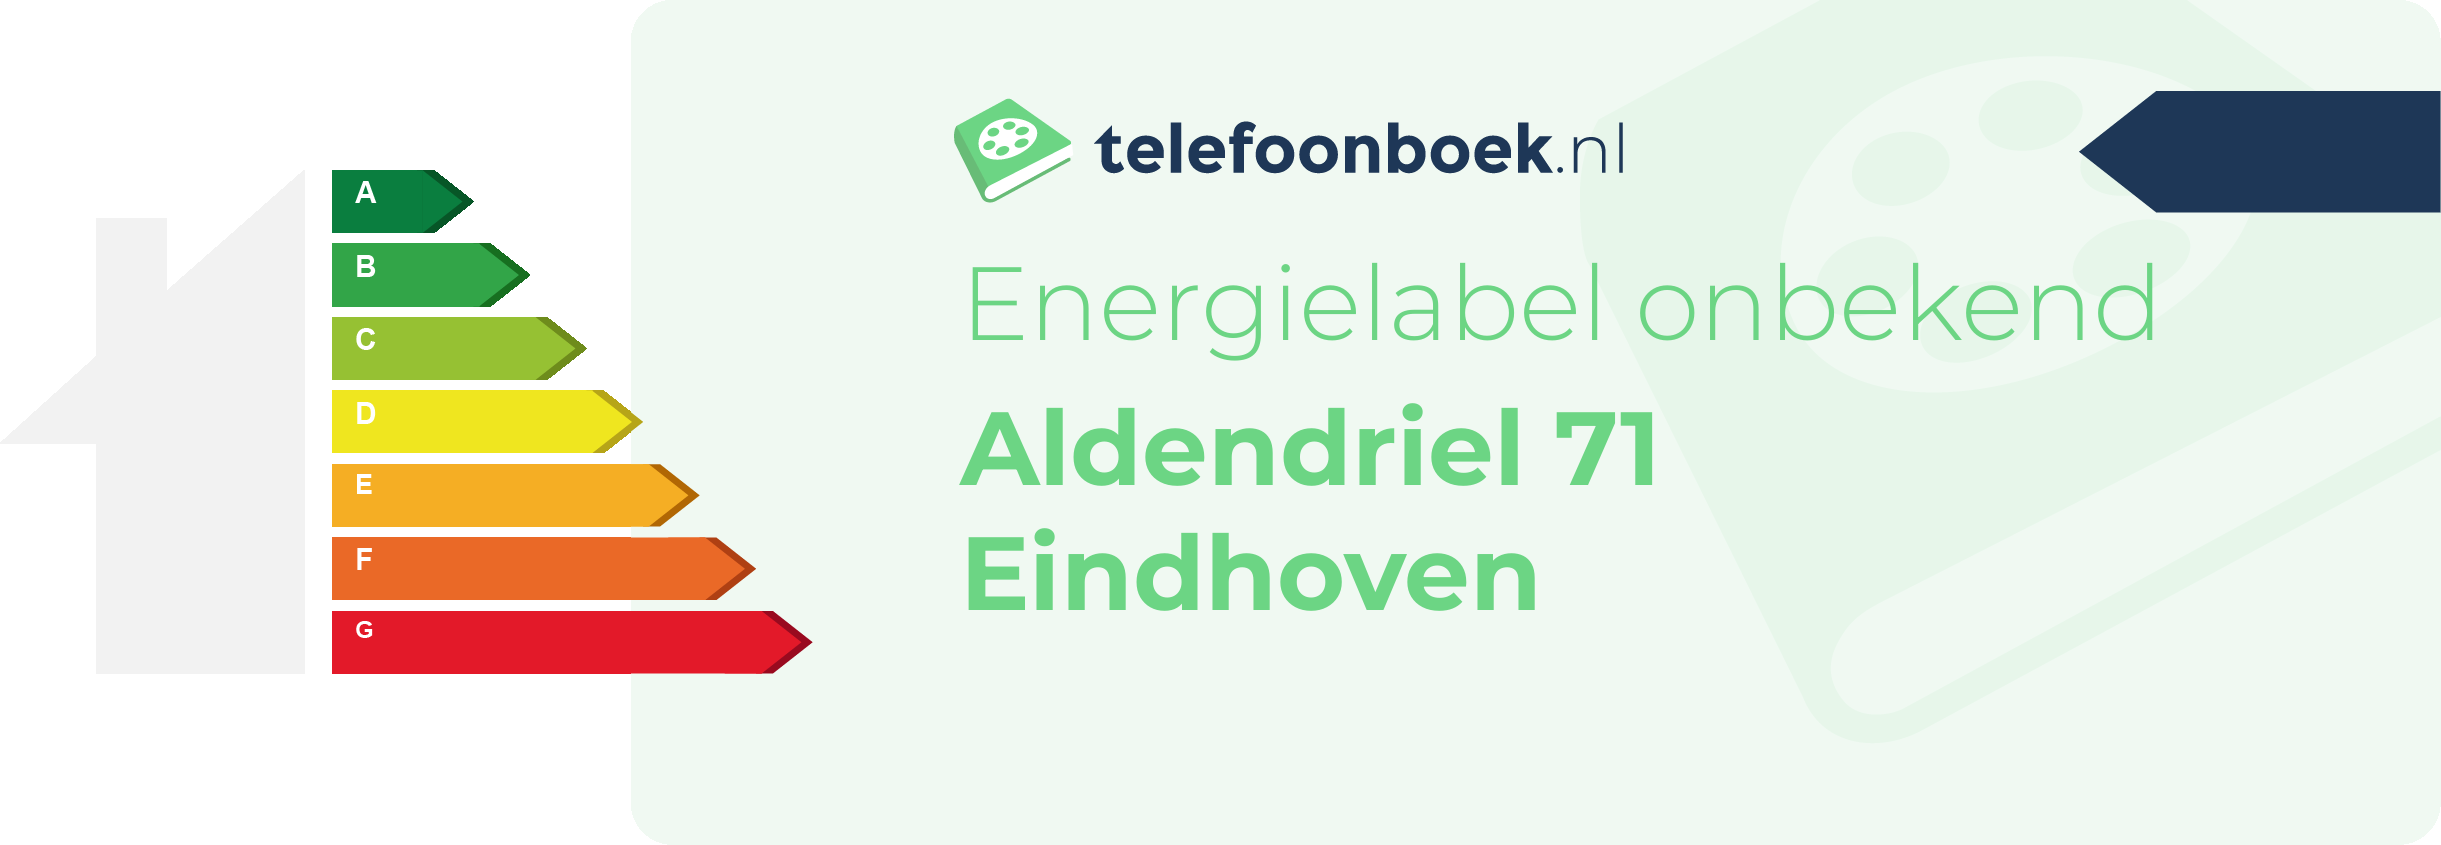 Energielabel Aldendriel 71 Eindhoven